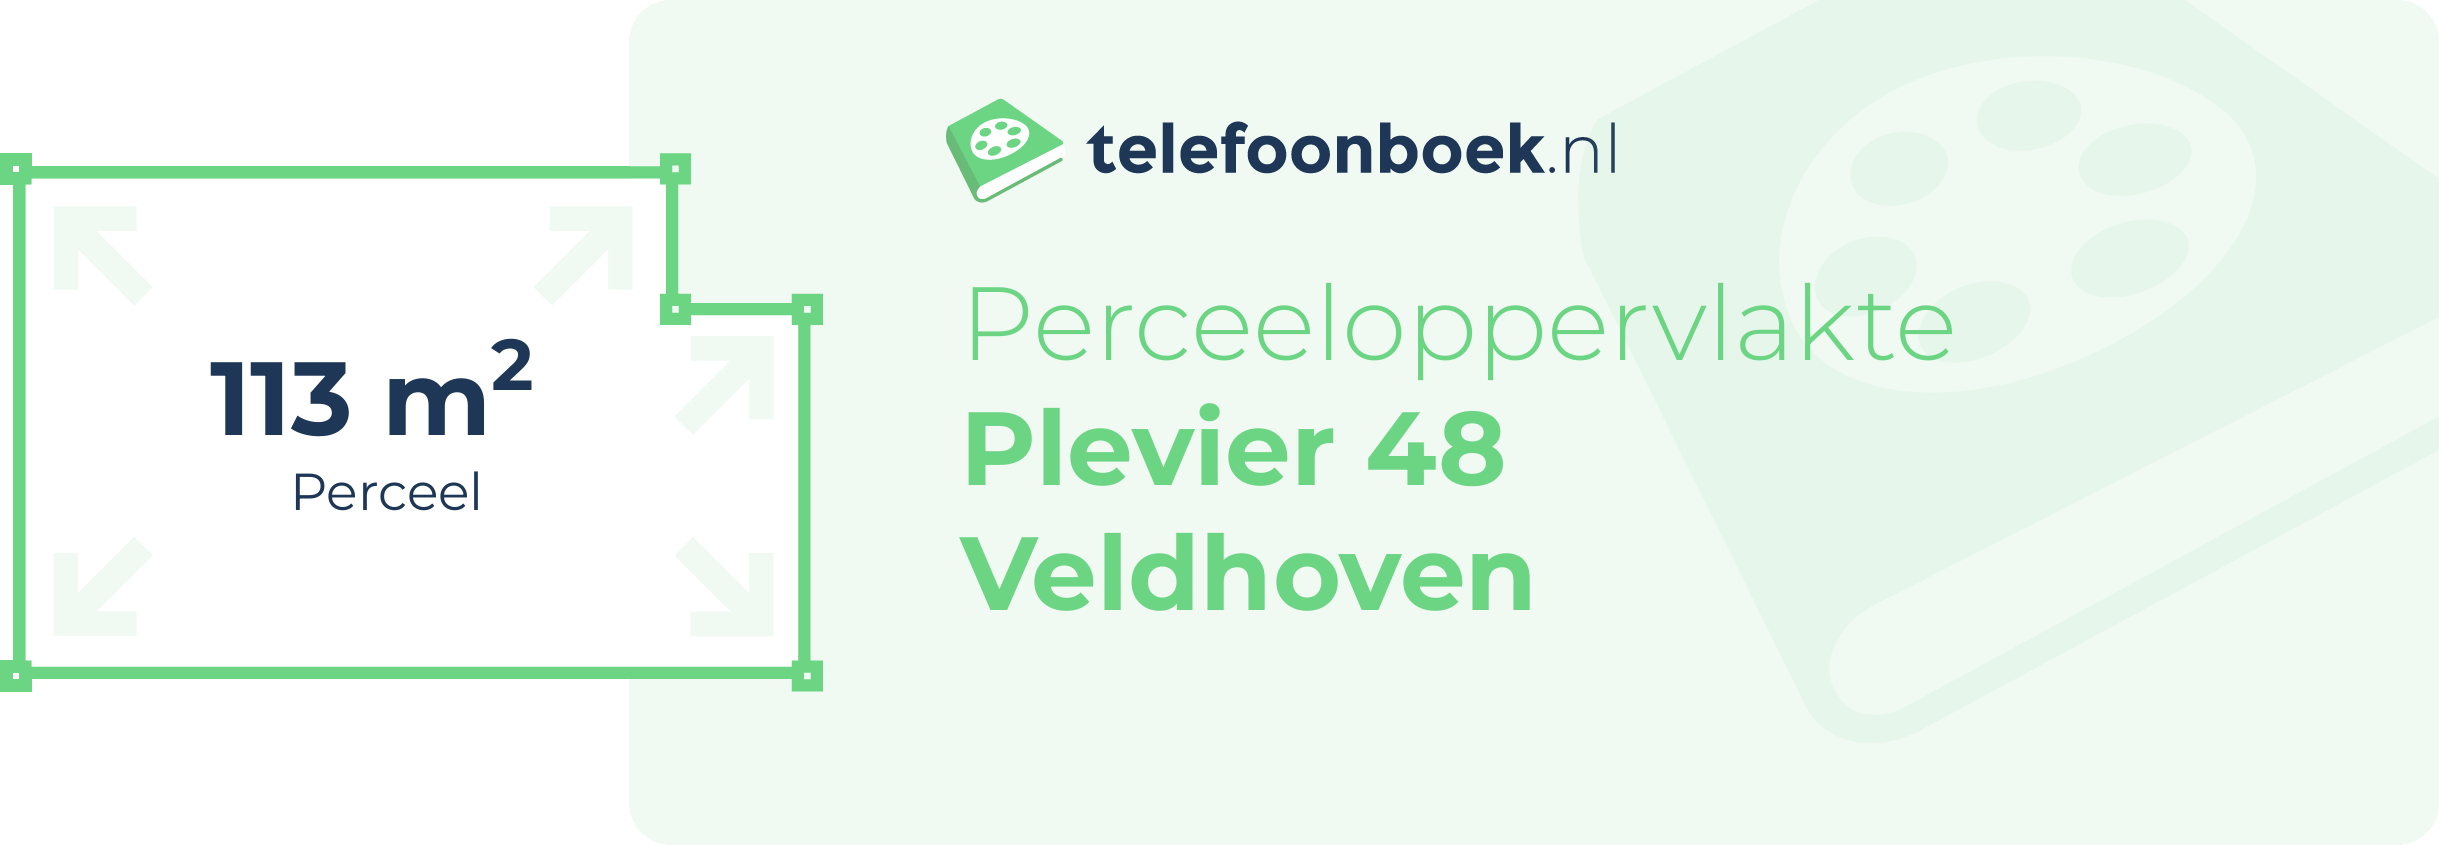 Perceeloppervlakte Plevier 48 Veldhoven